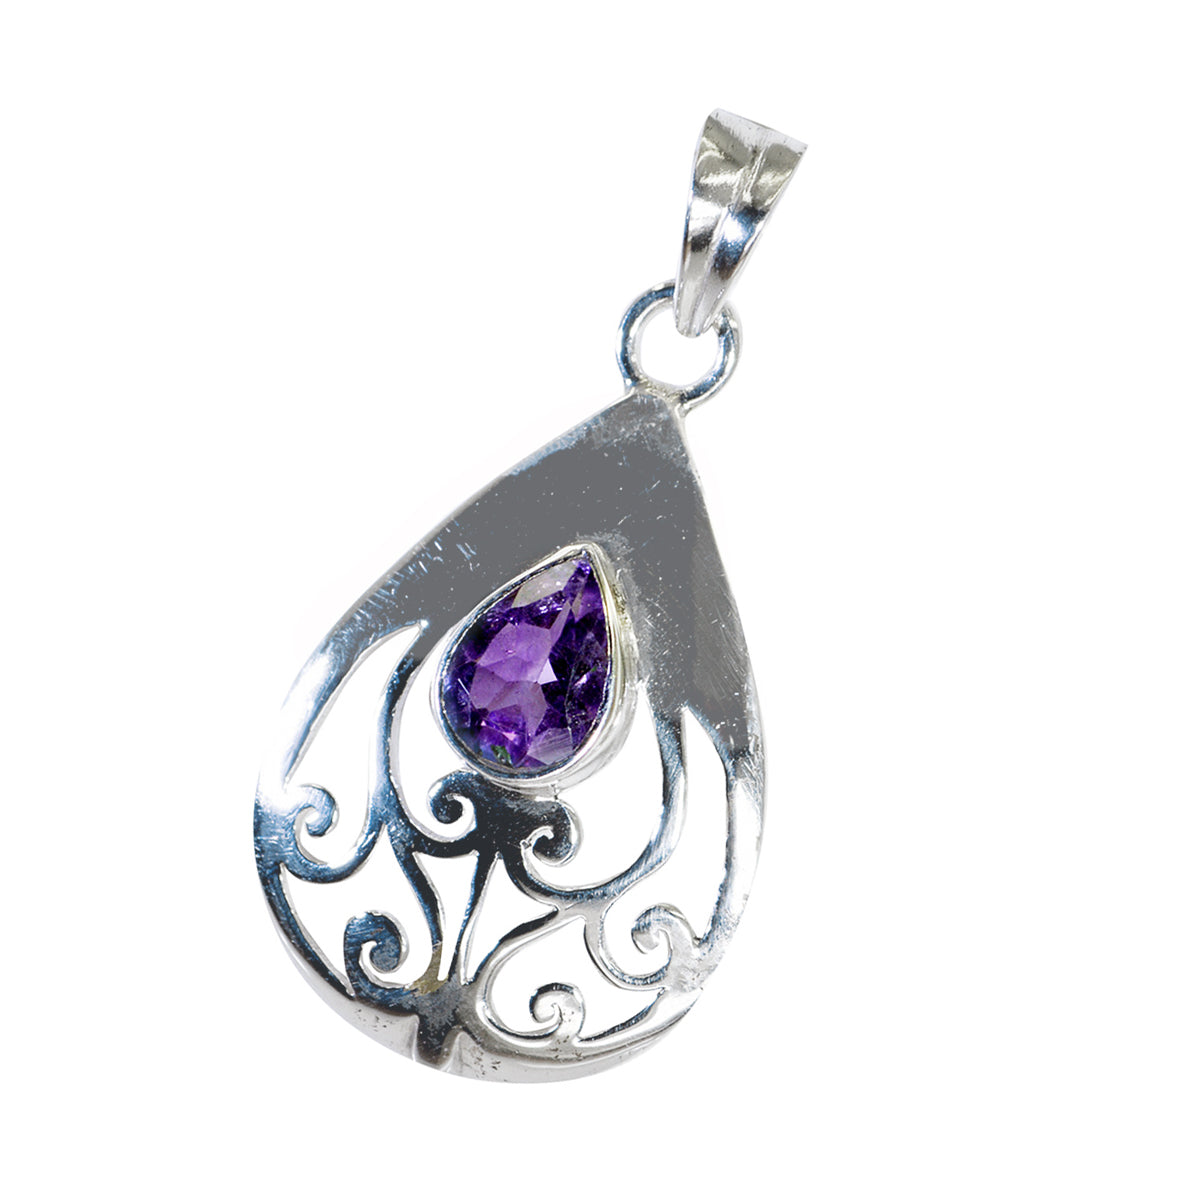 Подвеска из стерлингового серебра 1009 пробы с фиолетовым аметистом Riyo, приятный драгоценный камень, груша, граненый фиолетовый подарок на день рождения